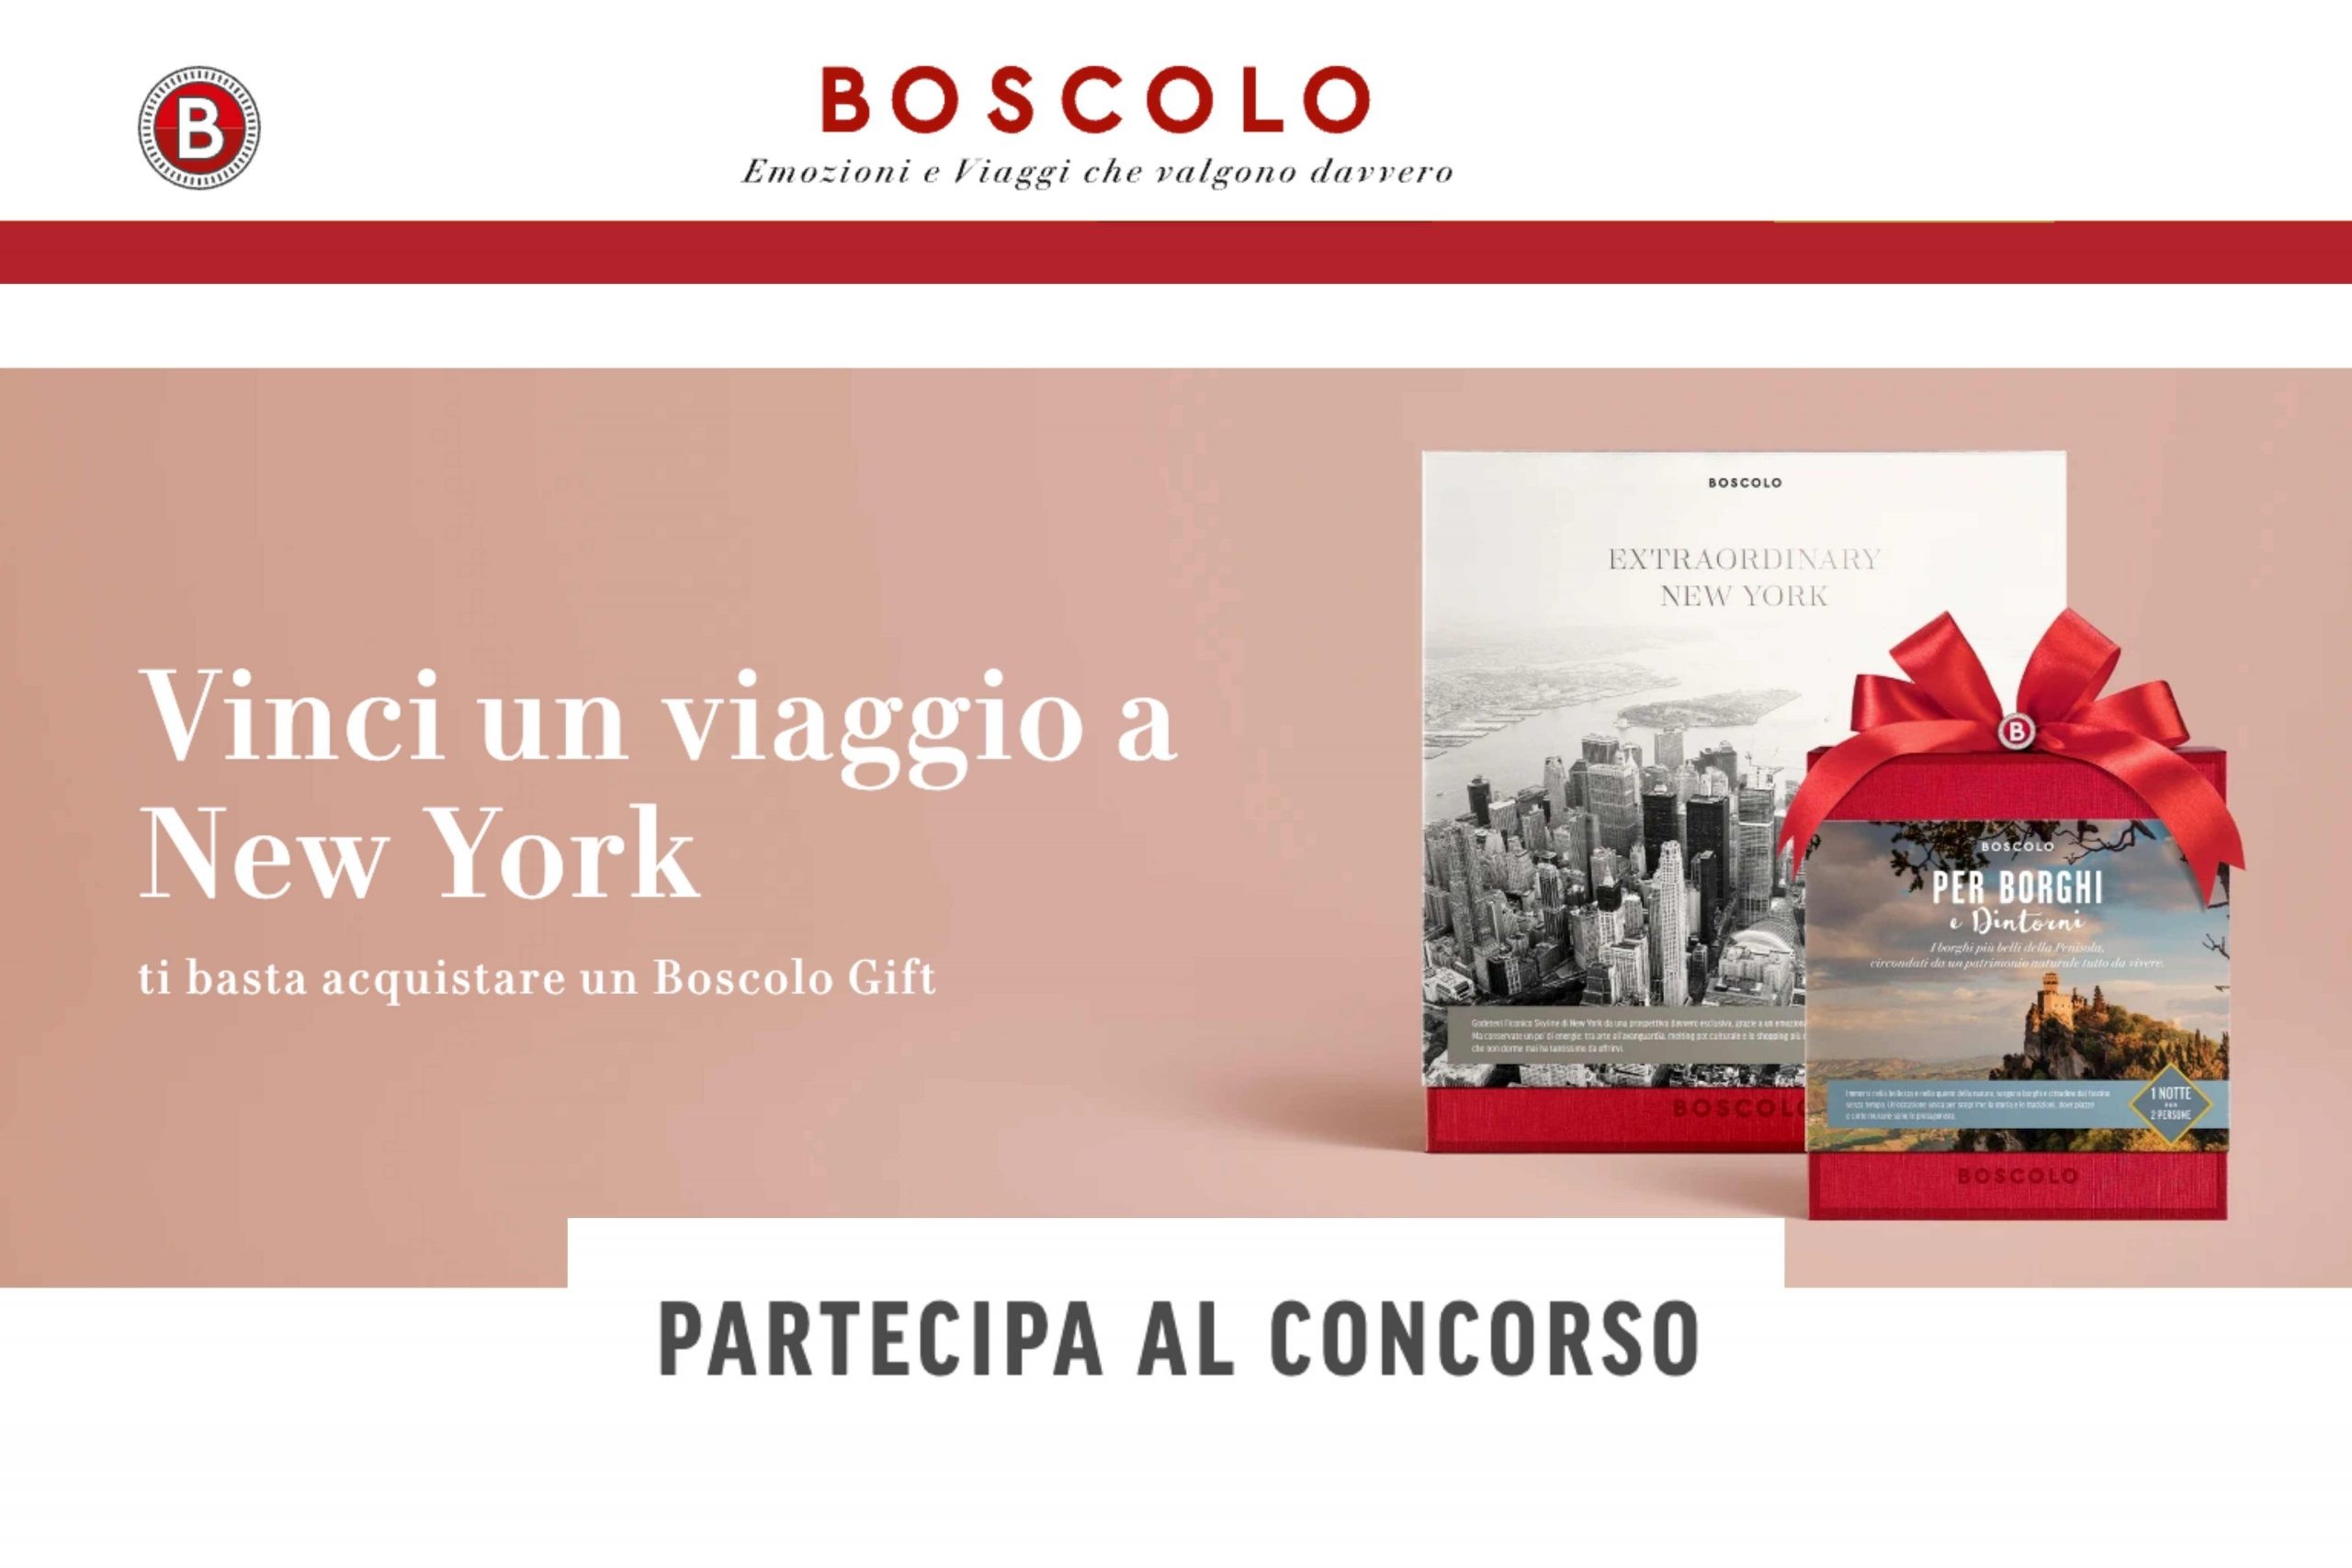 Concorso Boscolo Gift: Come vincere un viaggio a New York